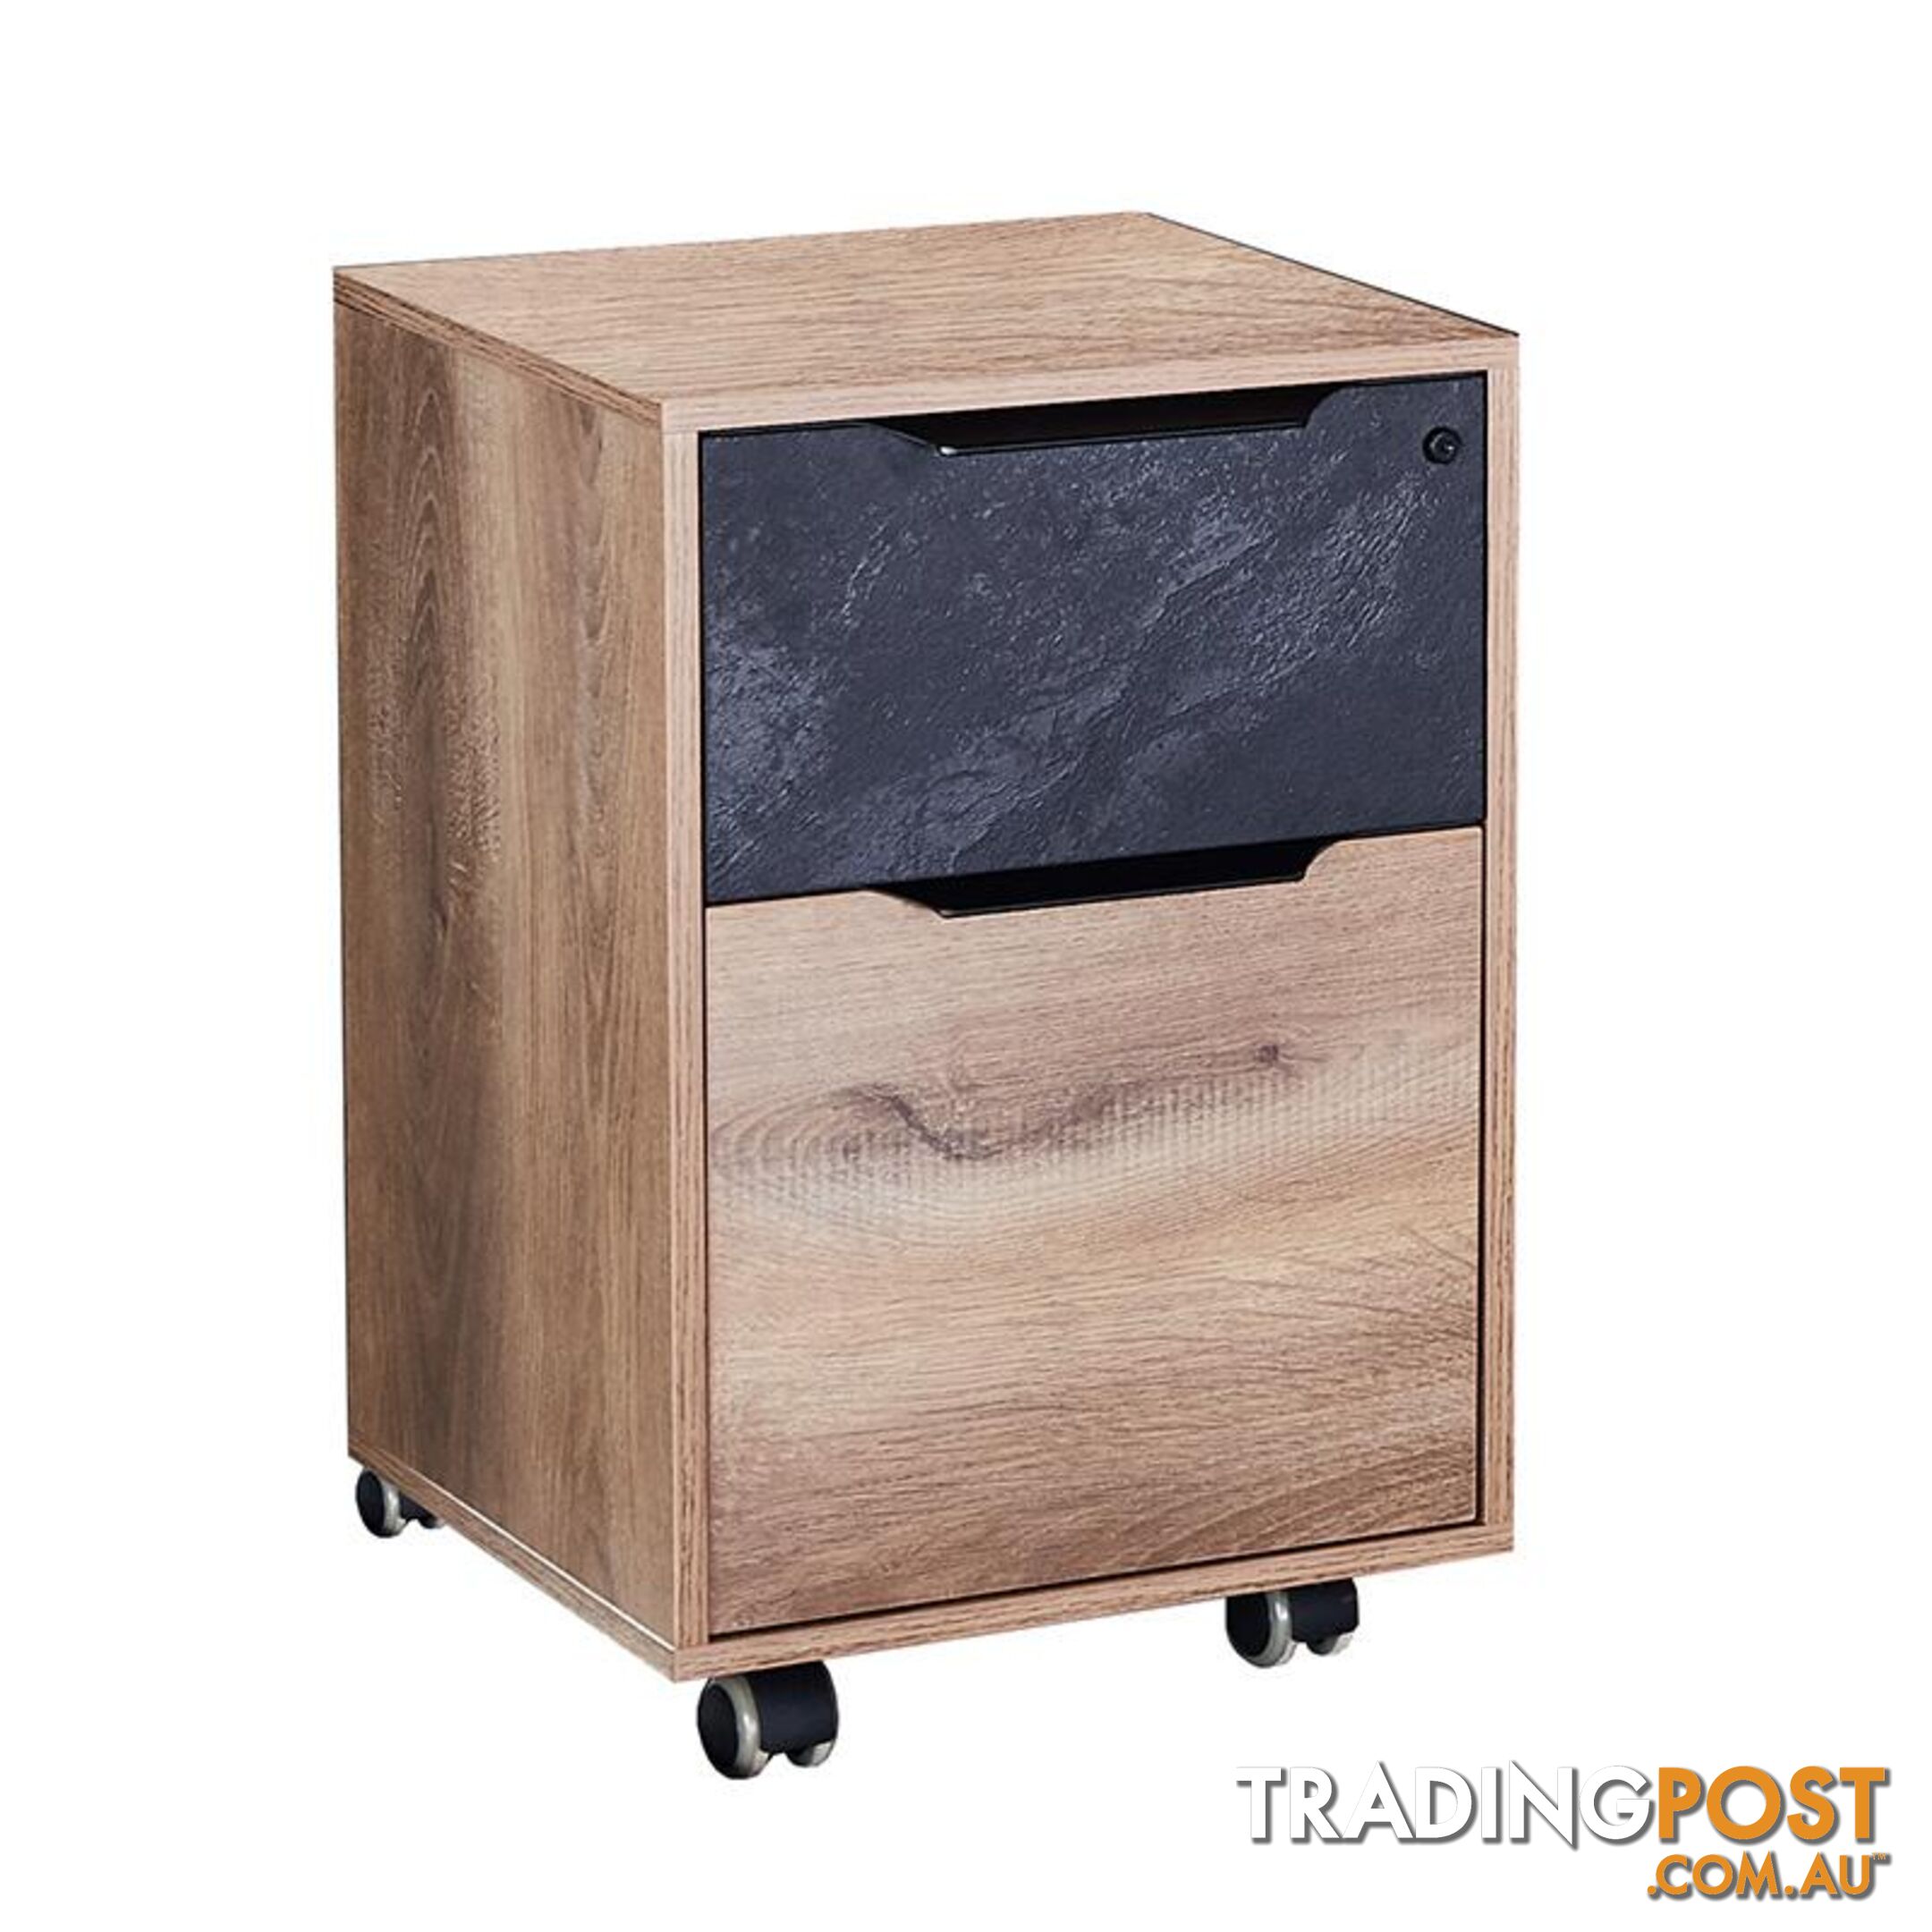 Daxton Mobile Cabinet 41cm - Warm Oak & Black - WF-N2802-CAB - 9334719003870